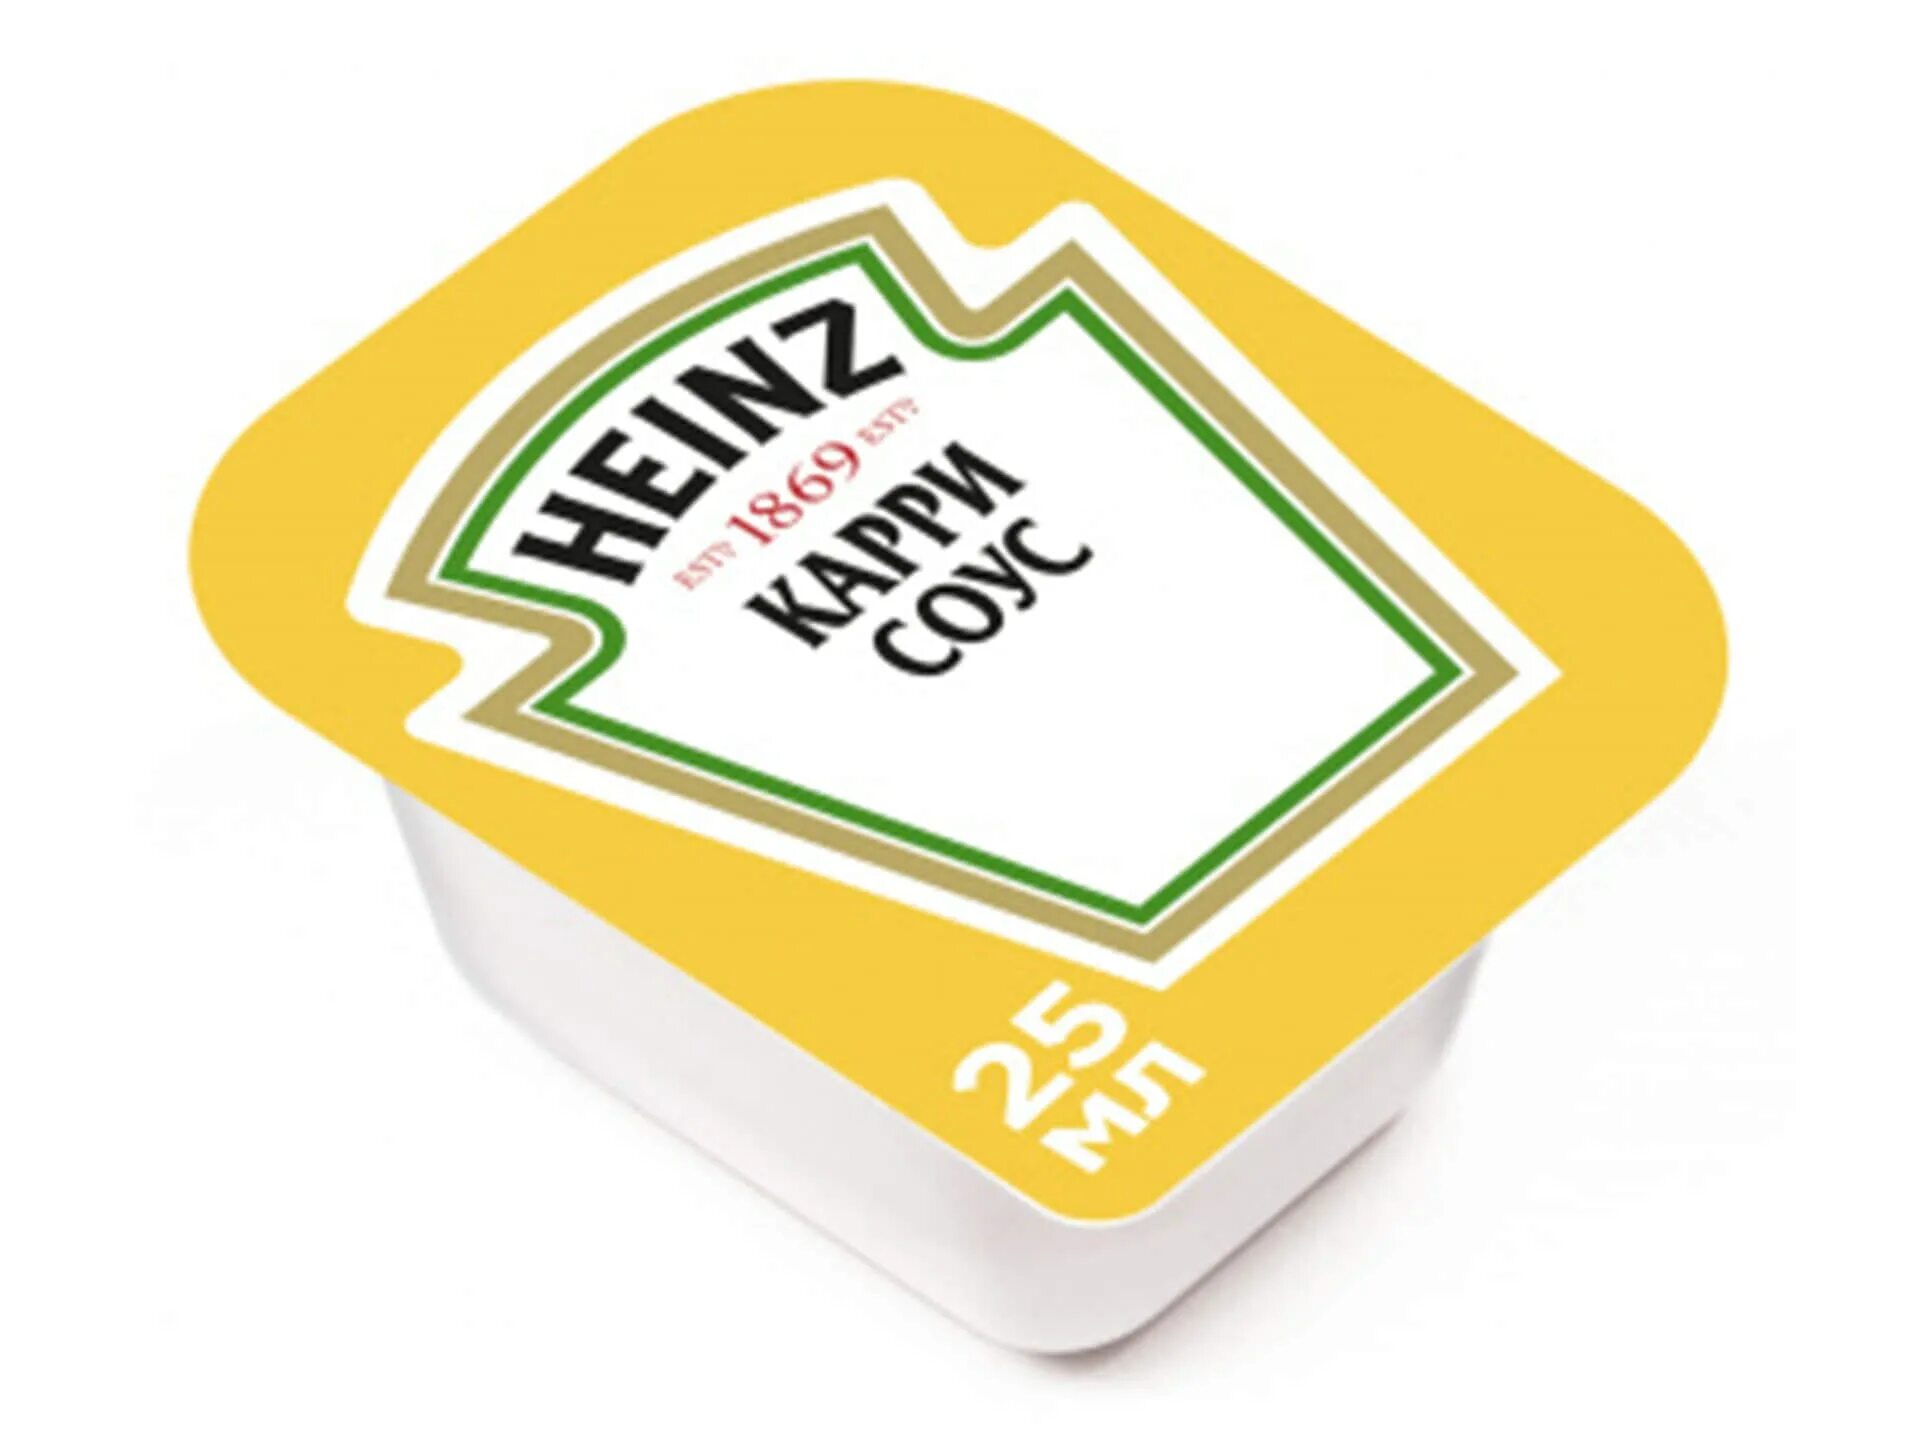 Сладкие соусы heinz. Соус Хайнц горчичный 25 мл. Соус Хайнц порционный. Кисло-сладкий соус Хайнц. Heinz кисло сладкий соус.